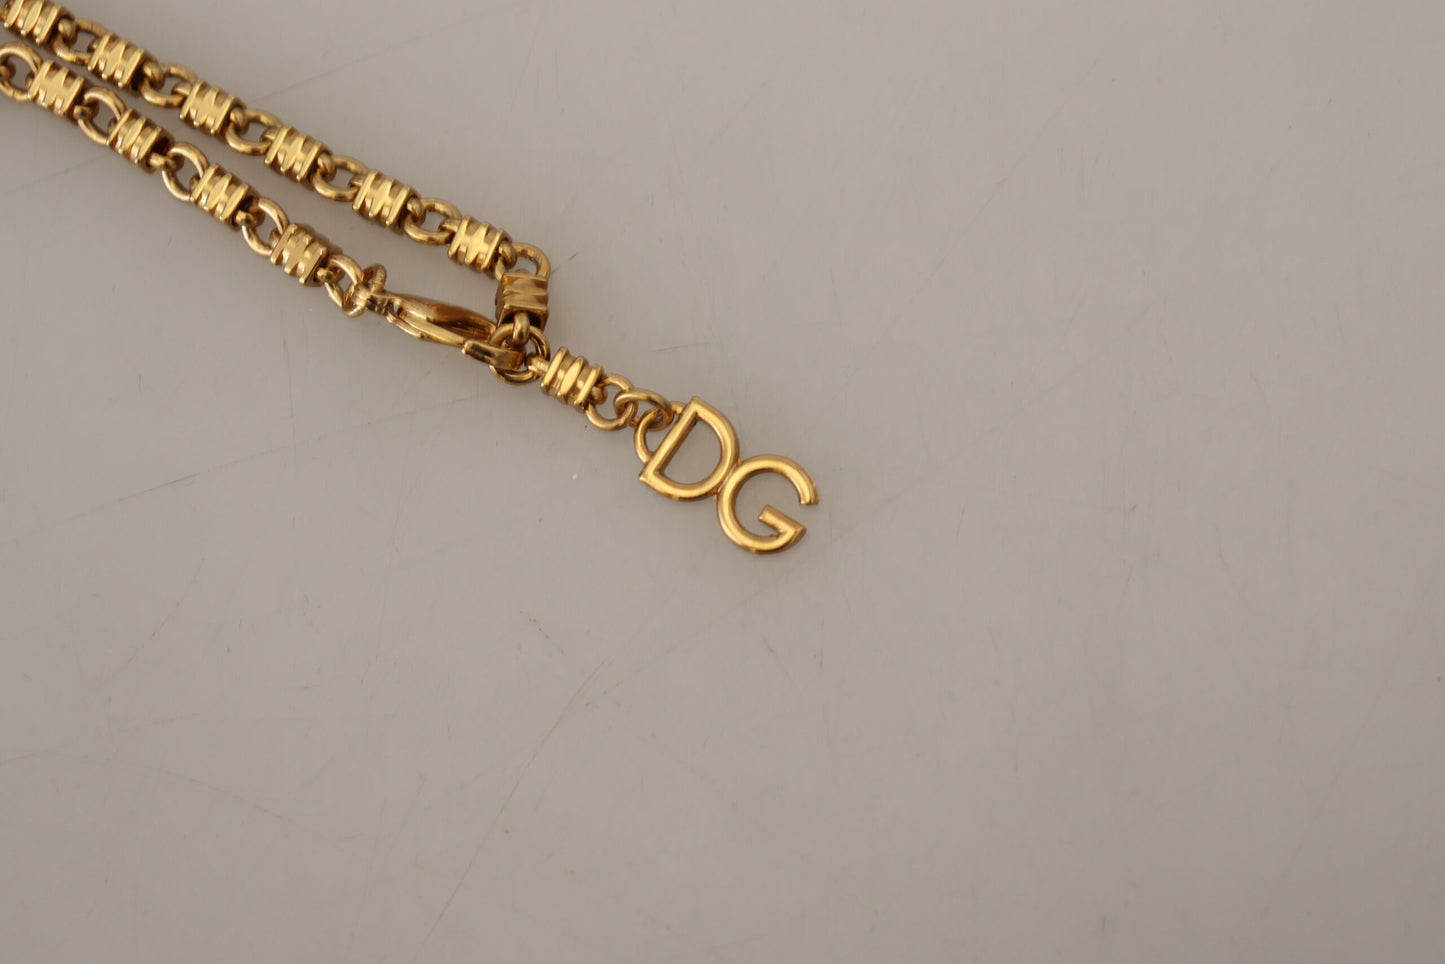 Elegant Gold Crystal Statement Necklace